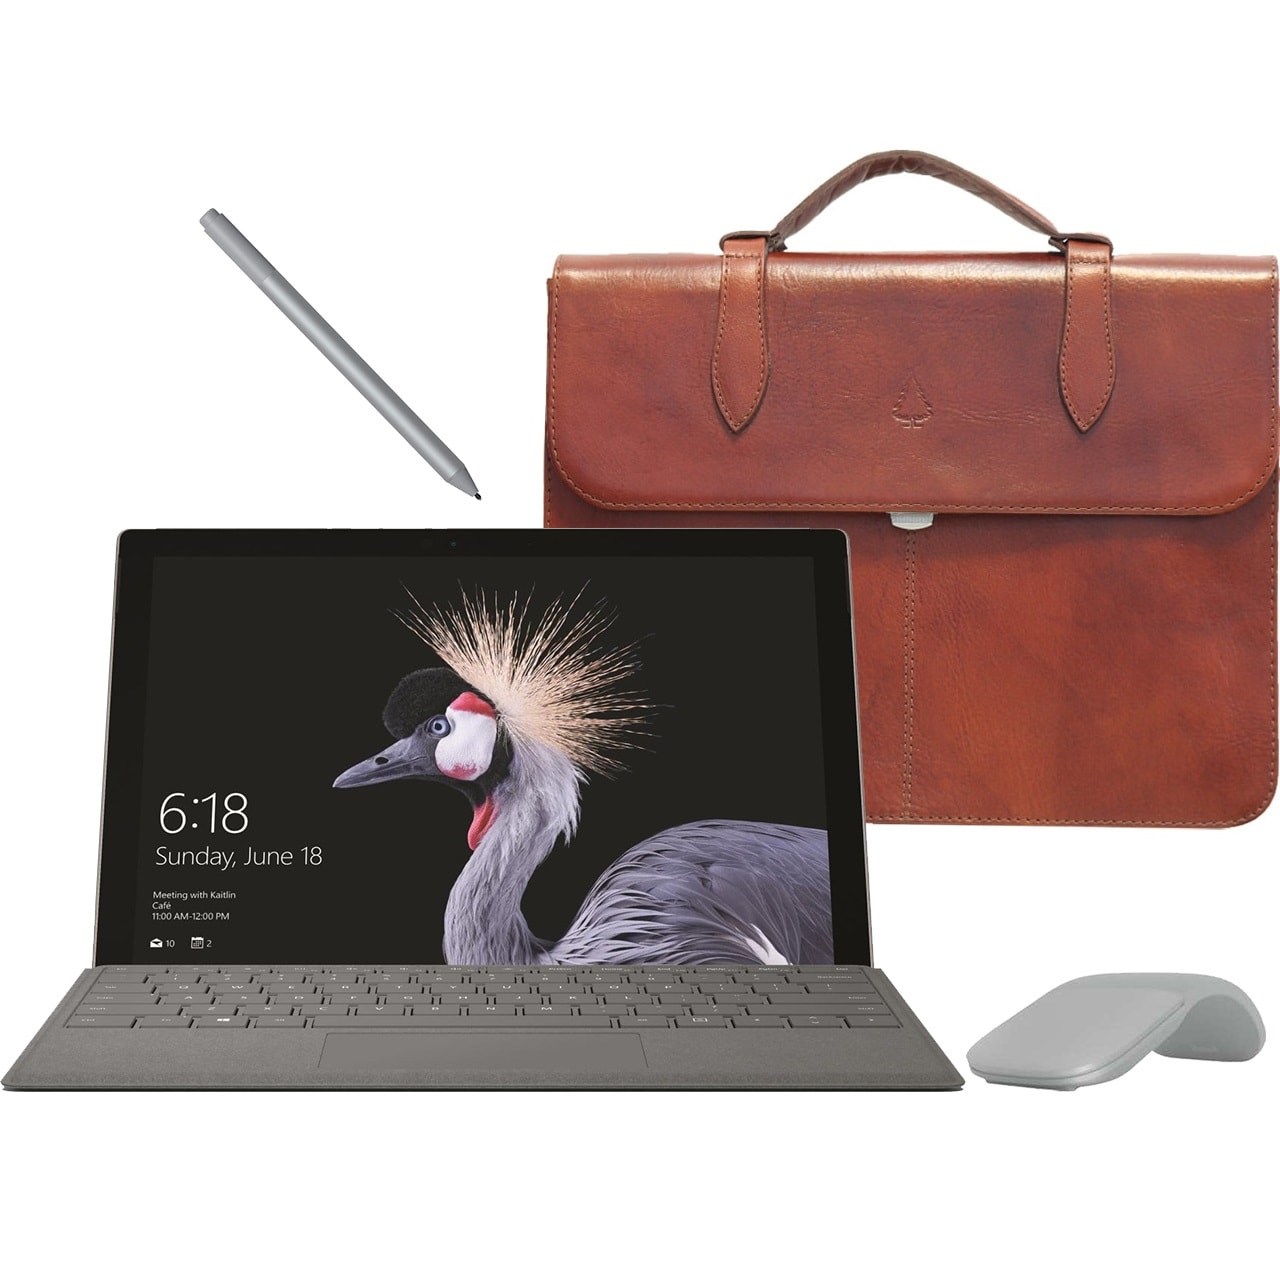 تبلت مایکروسافت مدل Surface Pro 2017 - F به همراه کیبورد و قلم و ماوس 2017  رنگ پلاتینیوم و کیف چرم صنوبر  - ظرفیت 1 ترابایت